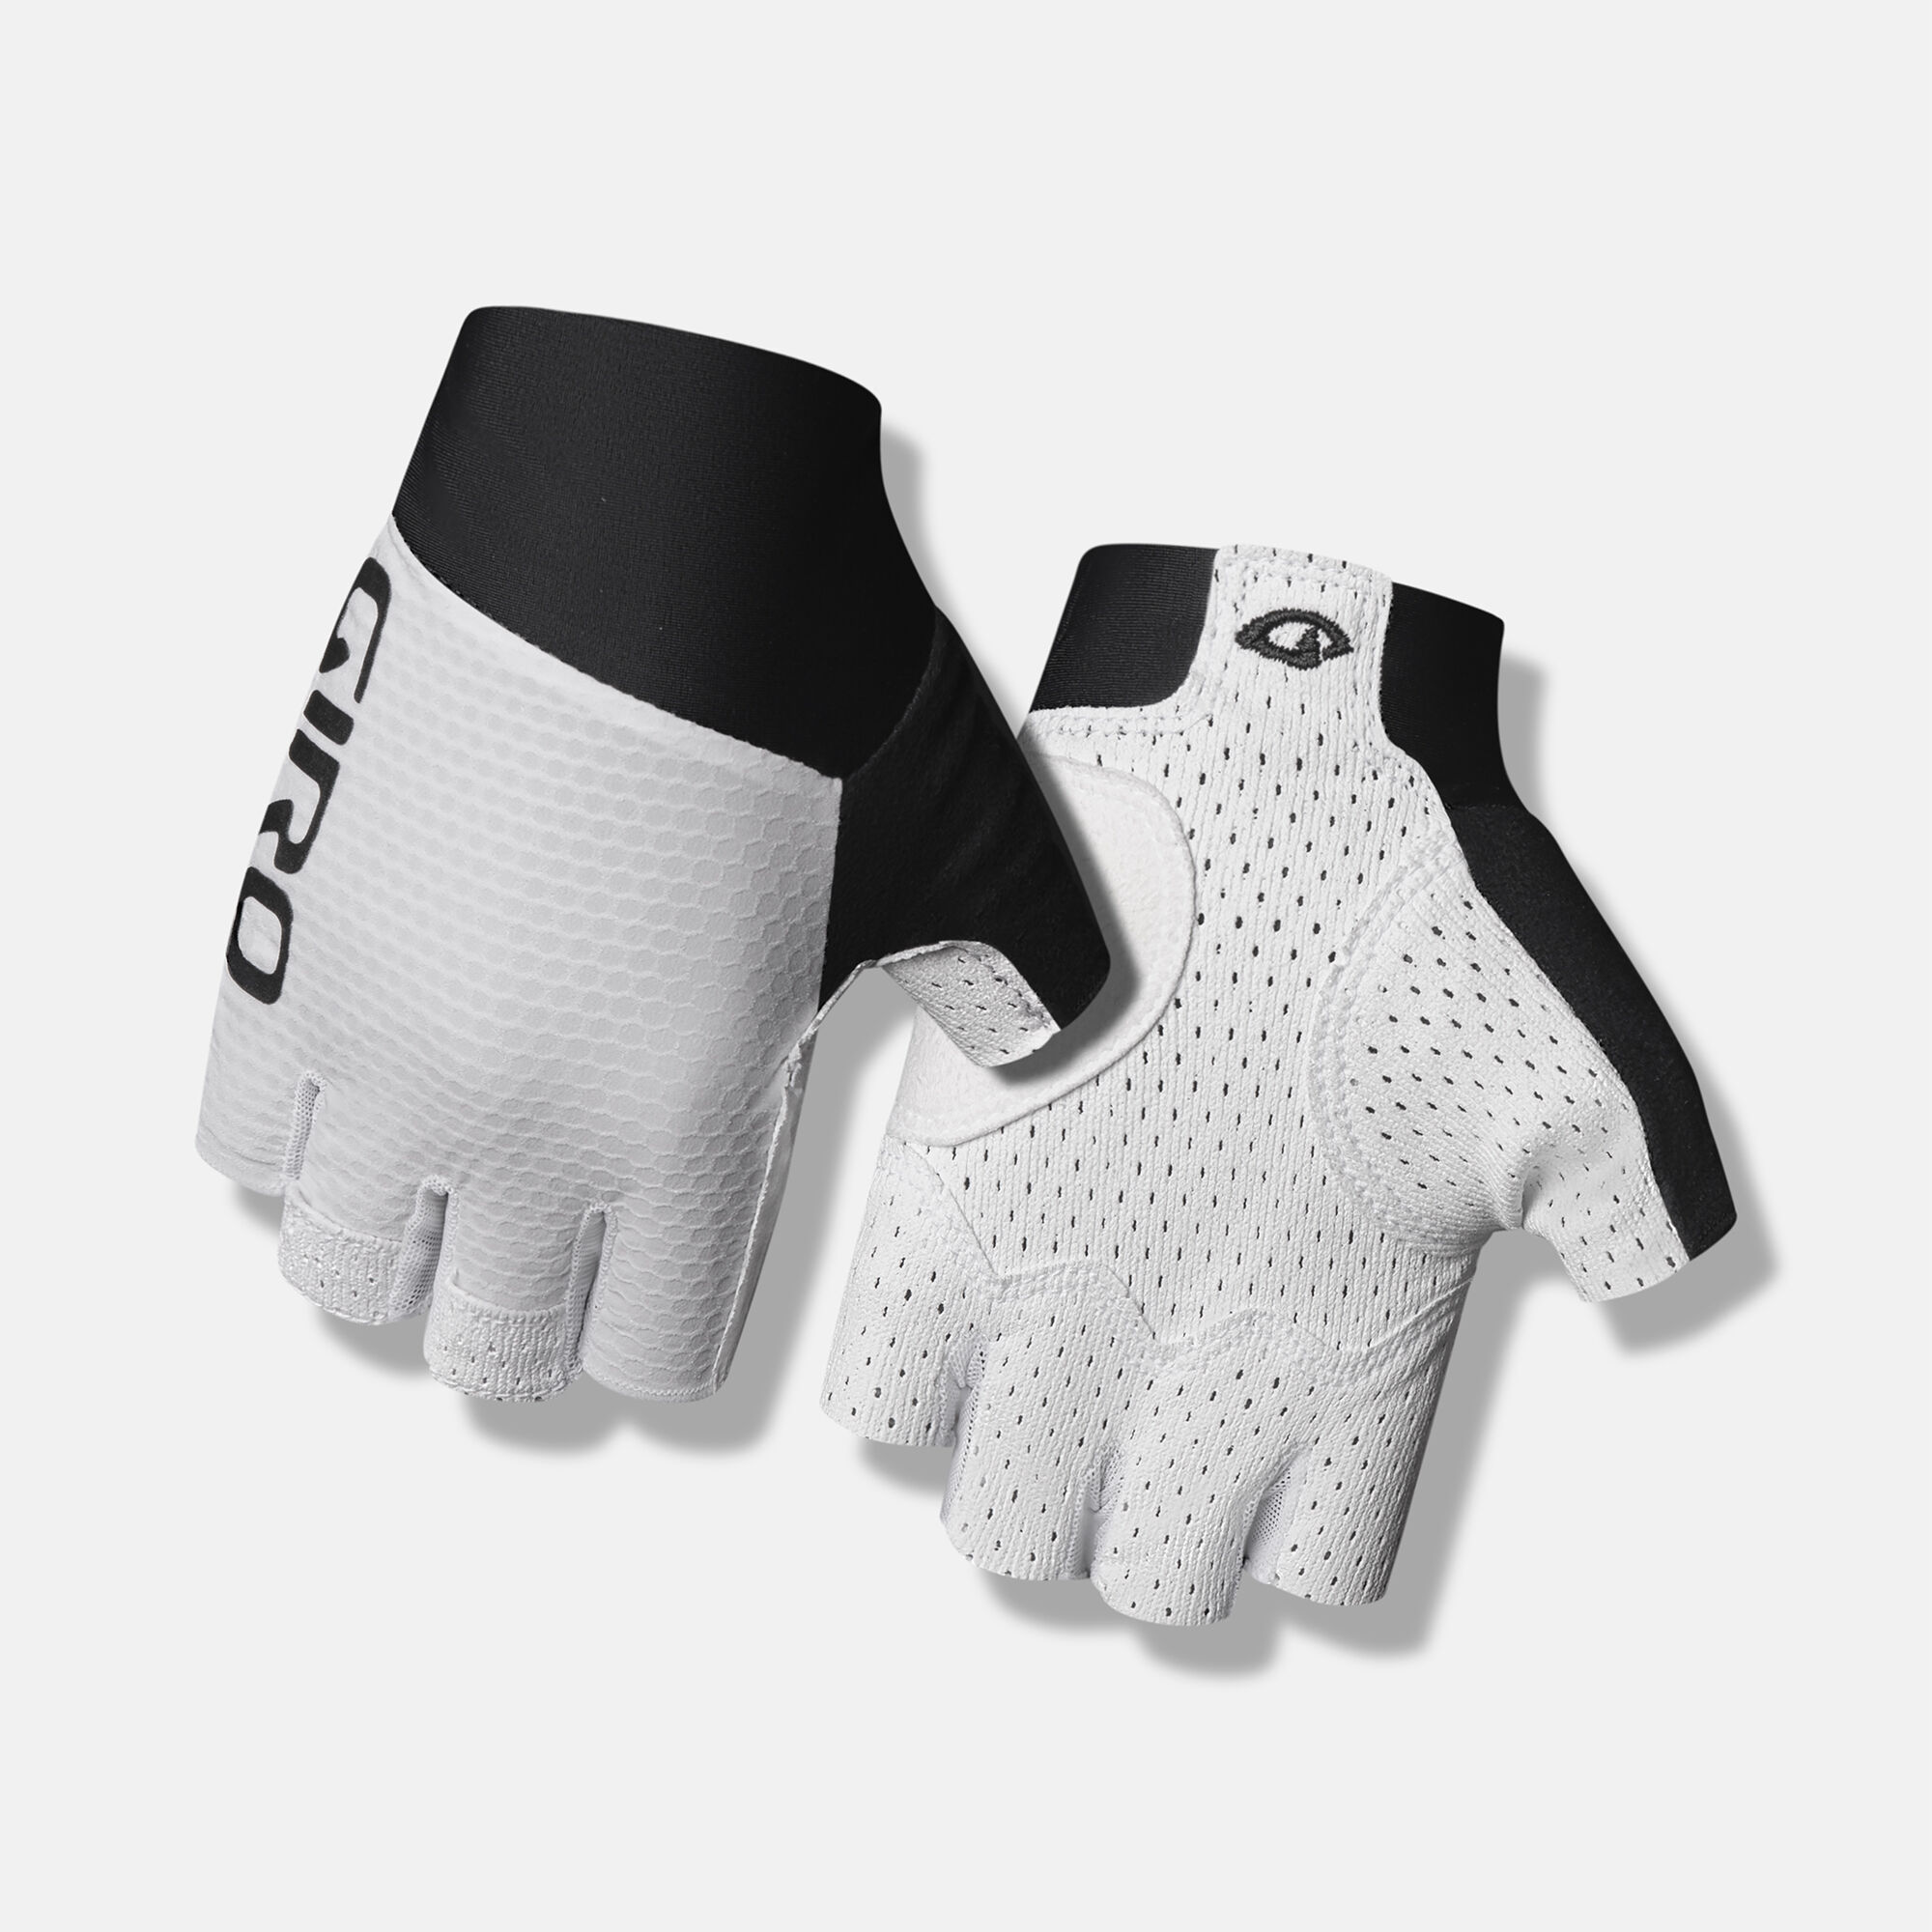 Zero CS Glove | Giro